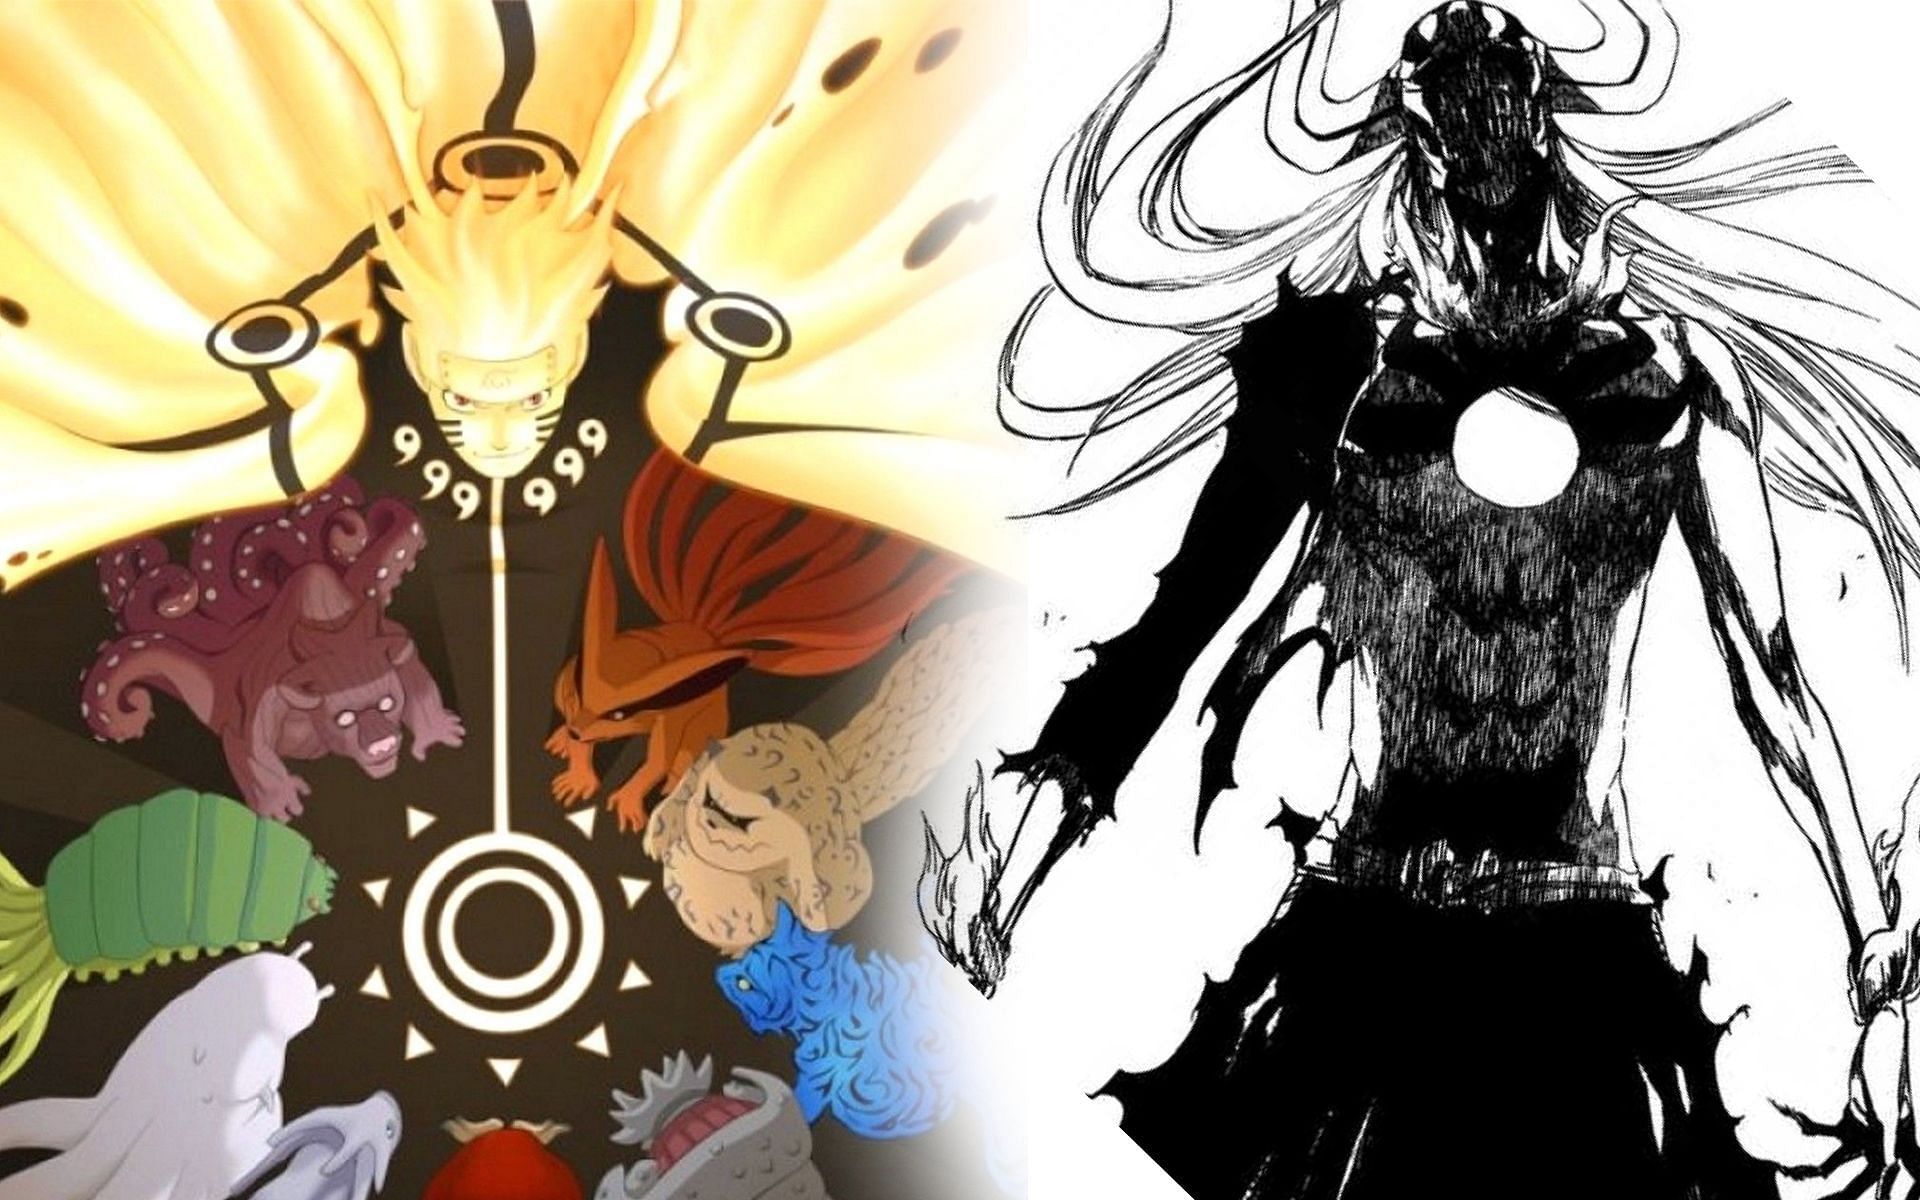 Bleach vs Naruto collage by AzureKensei on DeviantArt